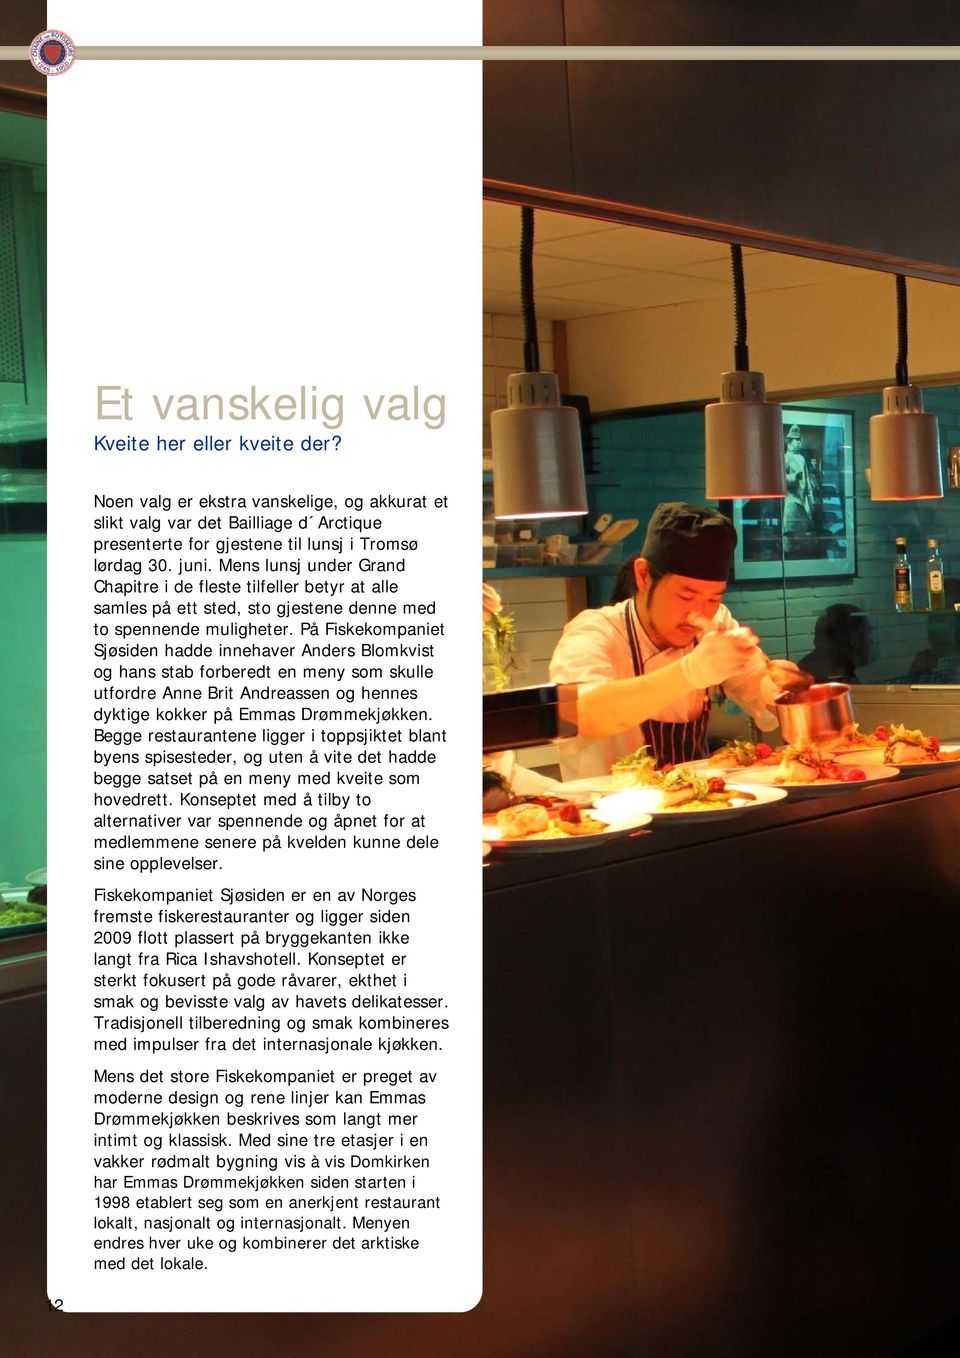 På Fiskekompaniet Sjøsiden hadde innehaver Anders Blomkvist og hans stab forberedt en meny som skulle utfordre Anne Brit Andreassen og hennes dyktige kokker på Emmas Drømmekjøkken.